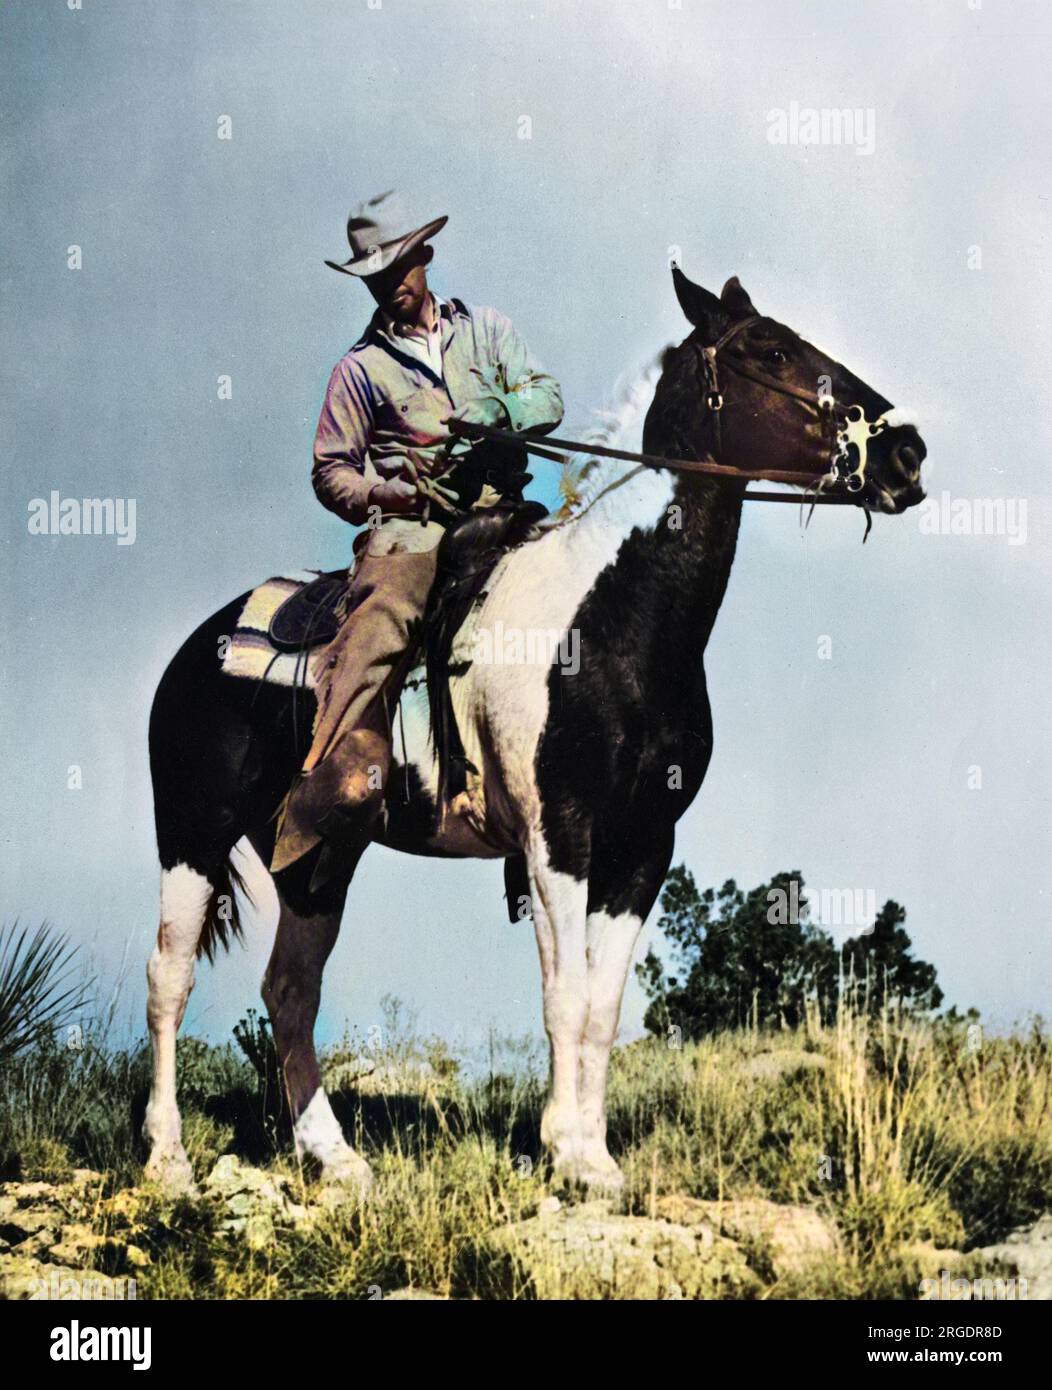 Tom Redford di Fort Davis, responsabile del progetto di cattura delle antilopi, visto qui a cavallo su una collina che si affaccia sul drive, U.S.A. Foto Stock